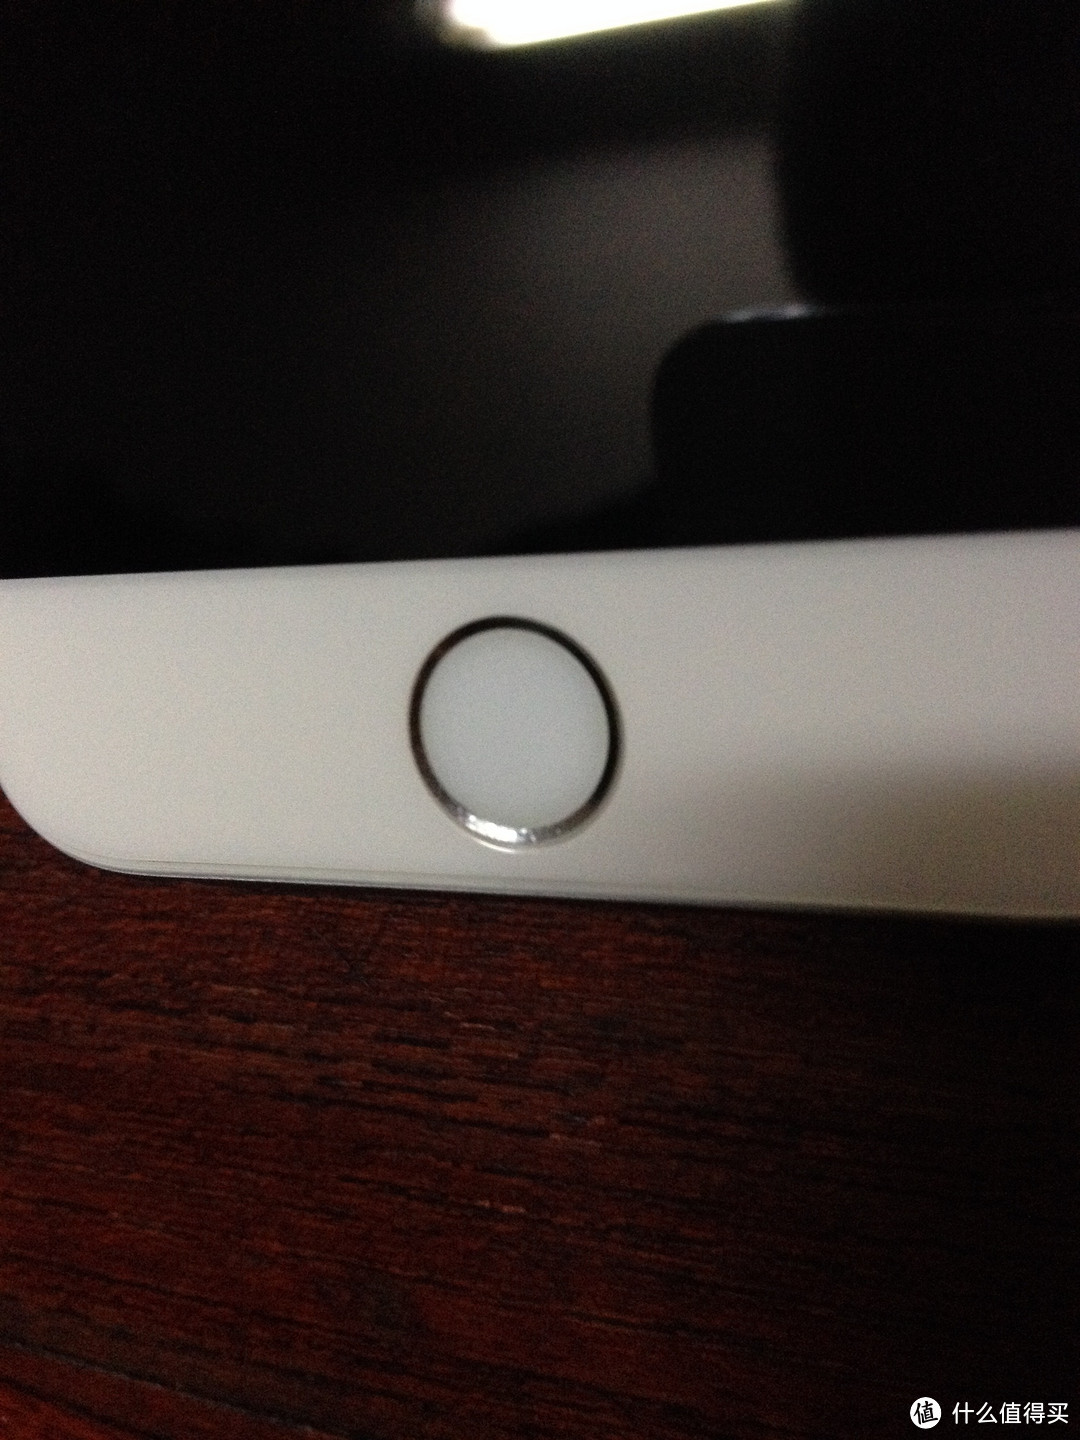 基本没有技术含量的贴膜测评 Benks 邦克仕 Magic KR PRO 手机贴膜 白色（适用于iphone 6)